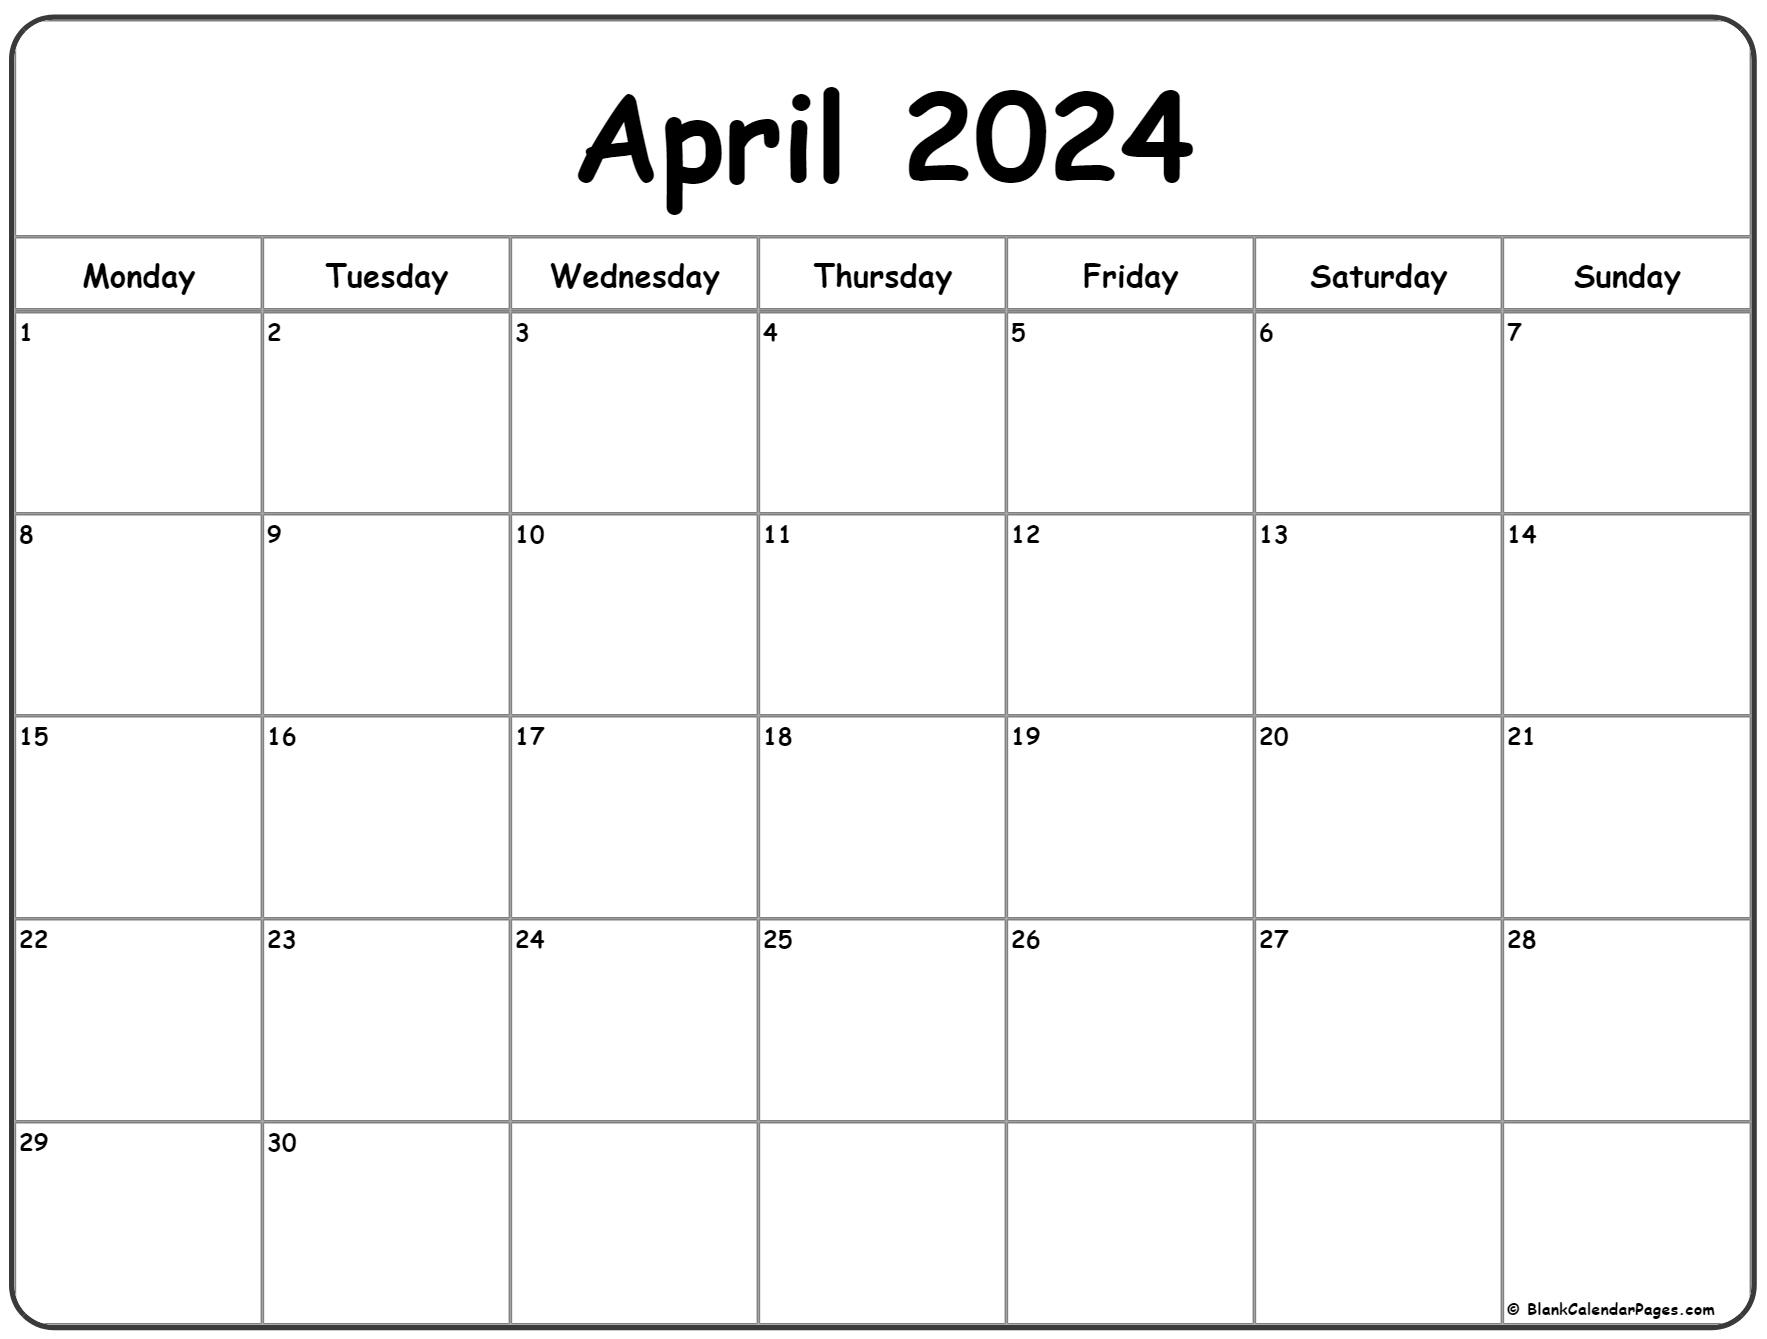 April 2024 Monday Calendar | Monday To Sunday for April Printable 2024 Calendar